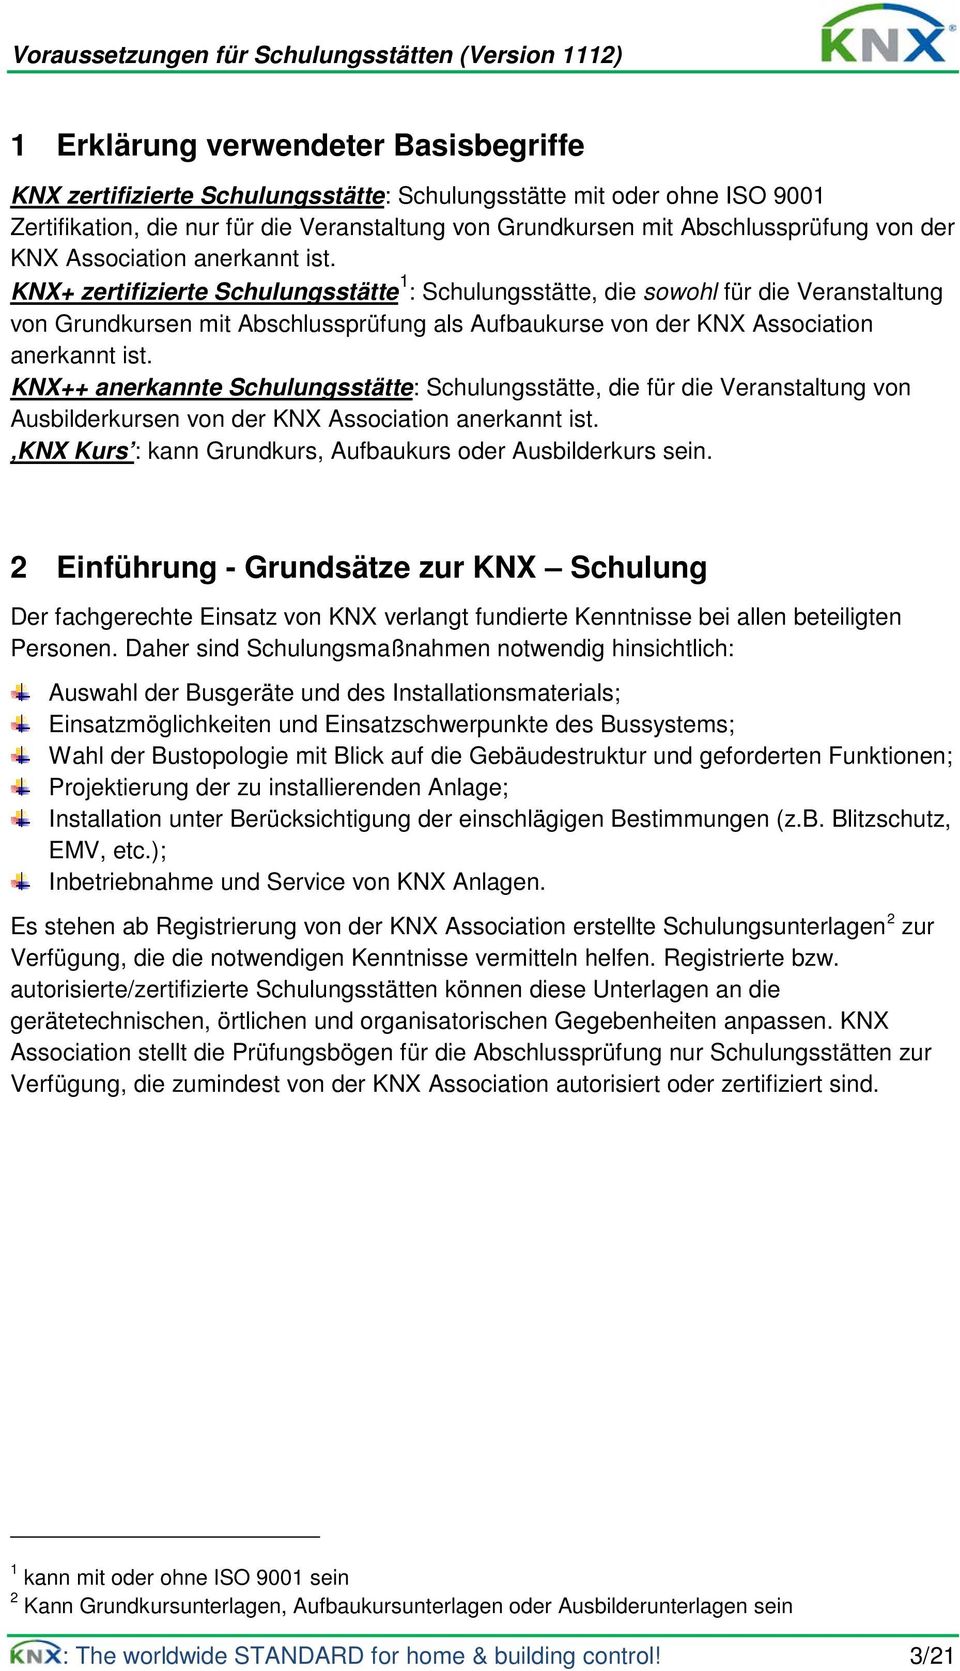 KNX+ zertifizierte Schulungsstätte 1 : Schulungsstätte, die sowohl für die Veranstaltung von Grundkursen mit Abschlussprüfung als Aufbaukurse von  KNX++ anerkannte Schulungsstätte: Schulungsstätte,